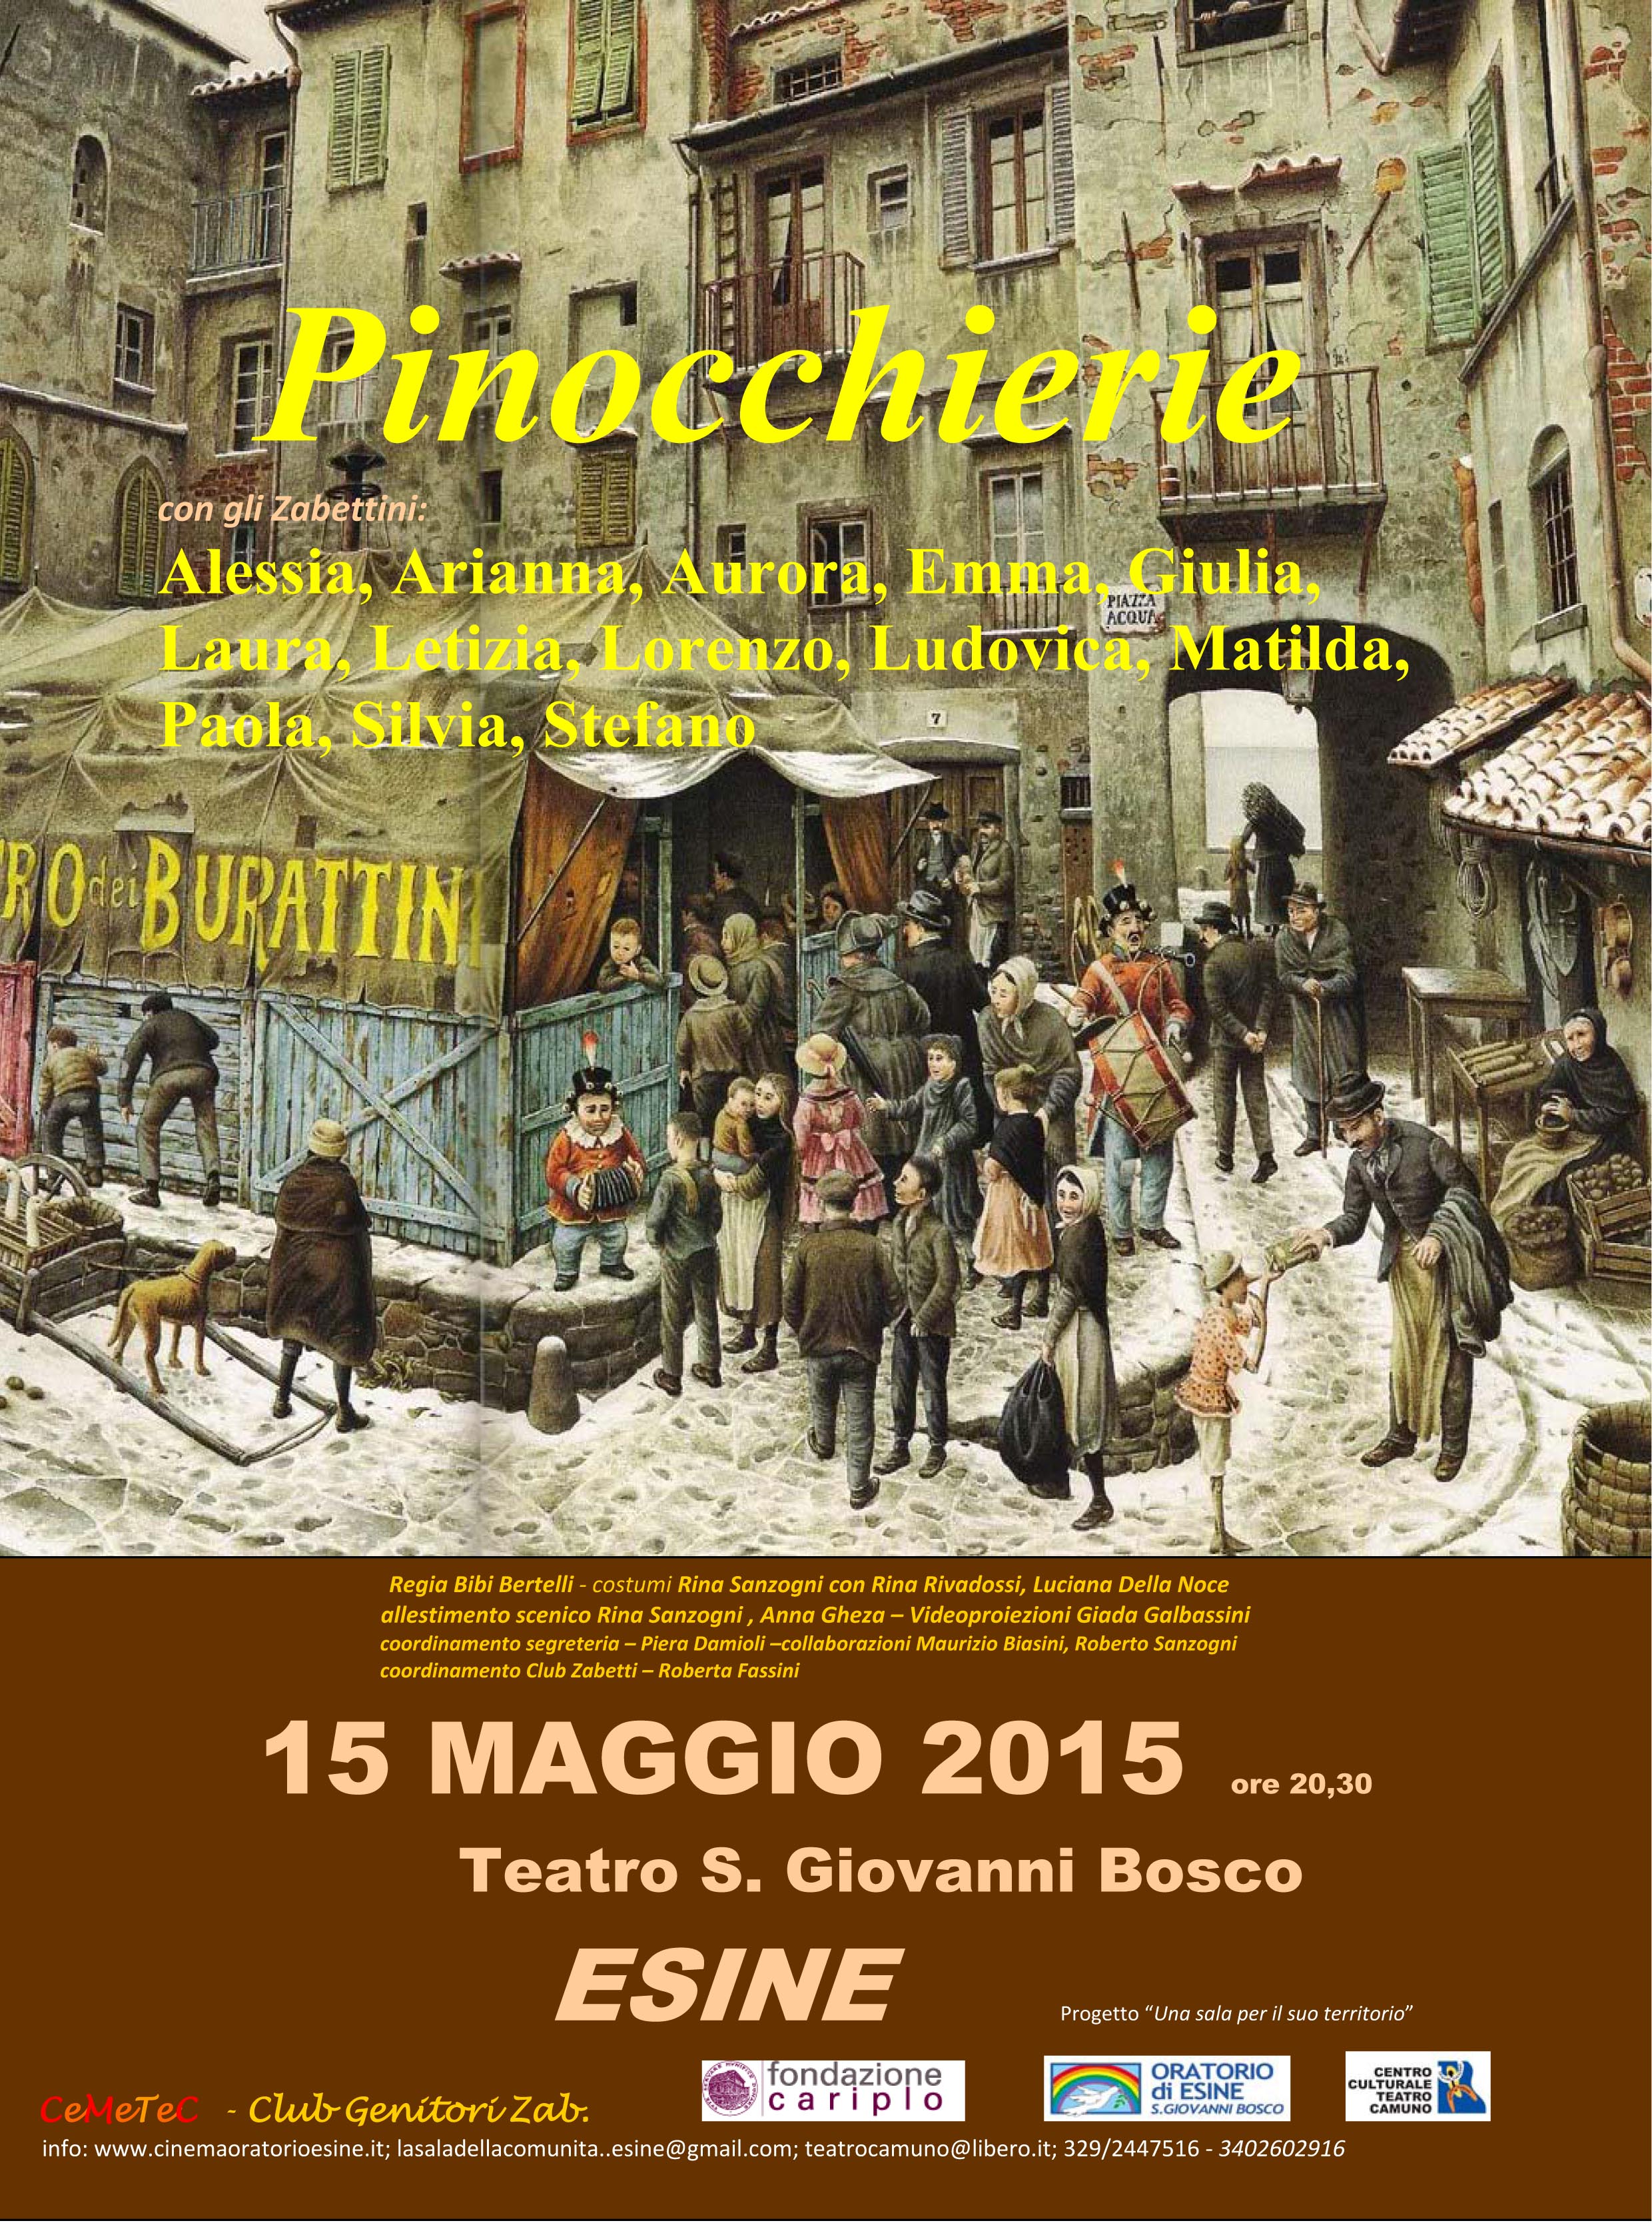 15 MAGGIO 2015  – PINOCCHIERIE – Teatro S. Giovanni Bosco ore 20.30